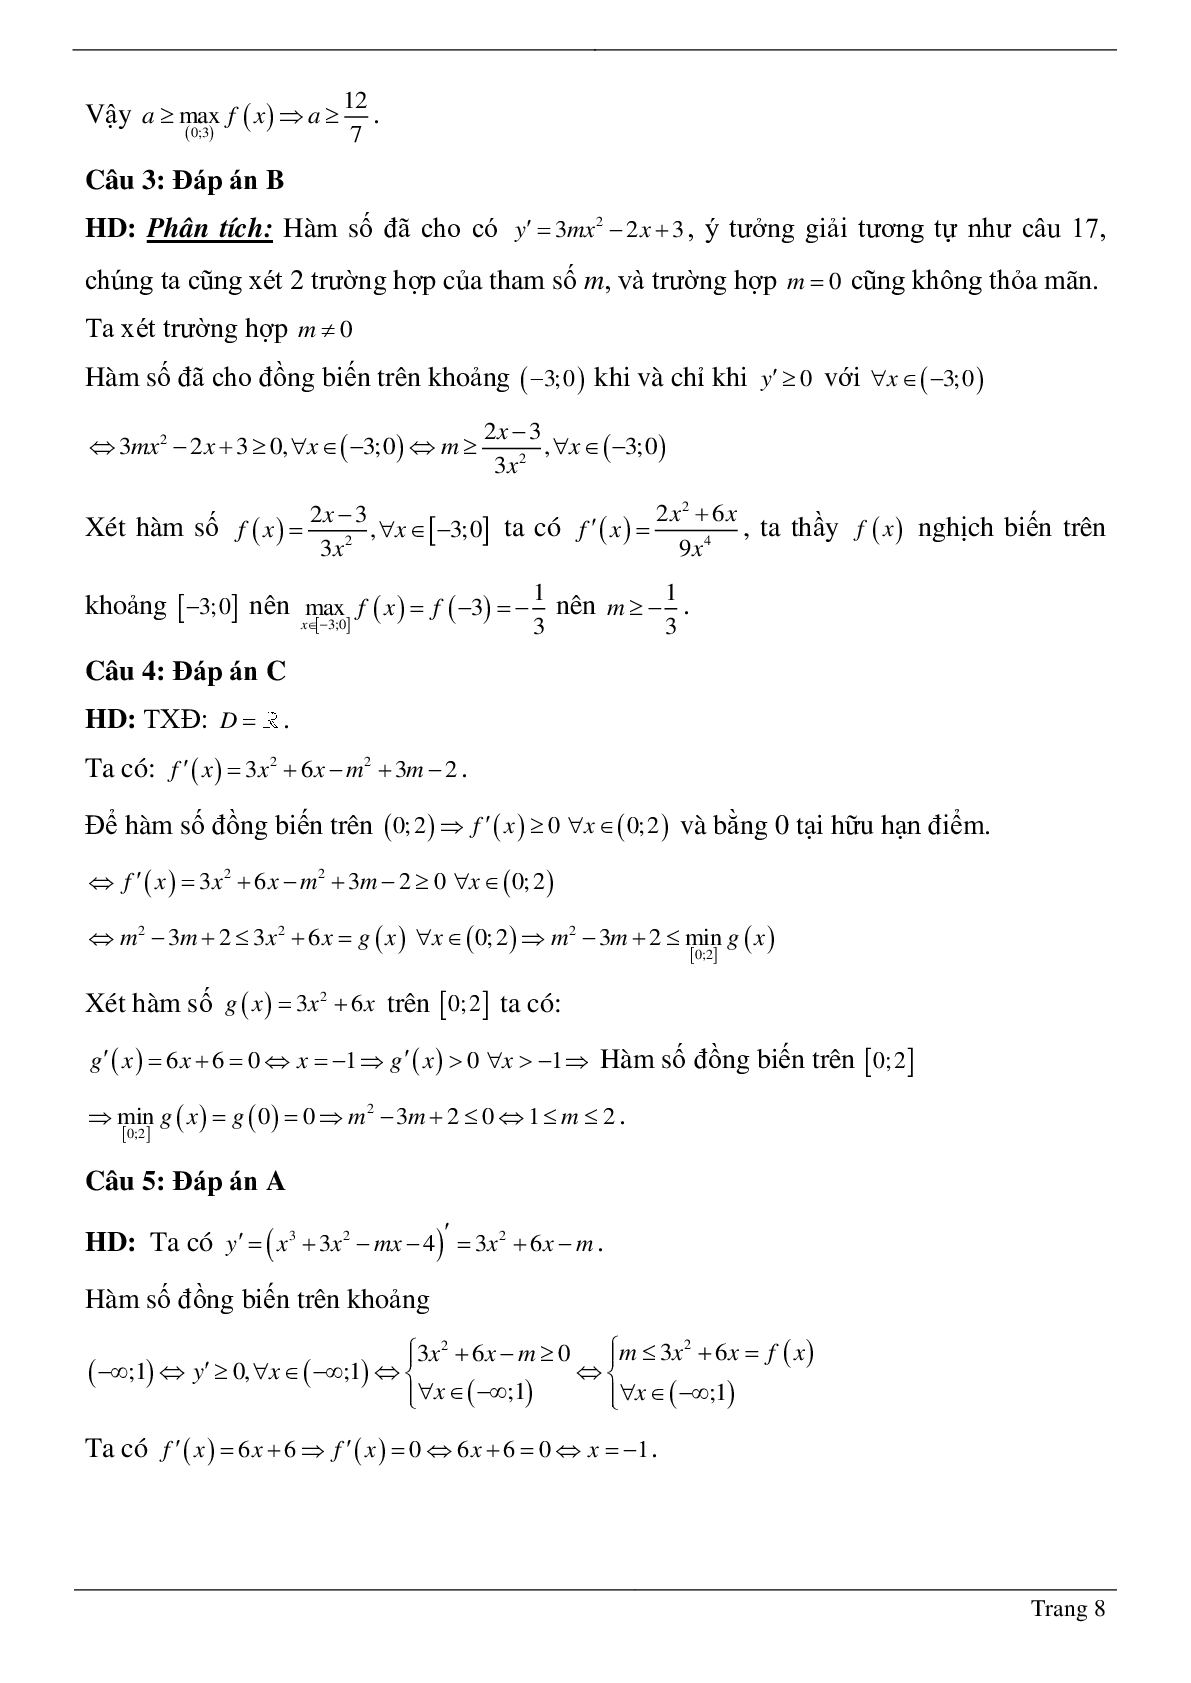 Tìm tham số M để hàm số bậc ba đồng biến, nghịch biến trên khoảng K cho trước (trang 8)